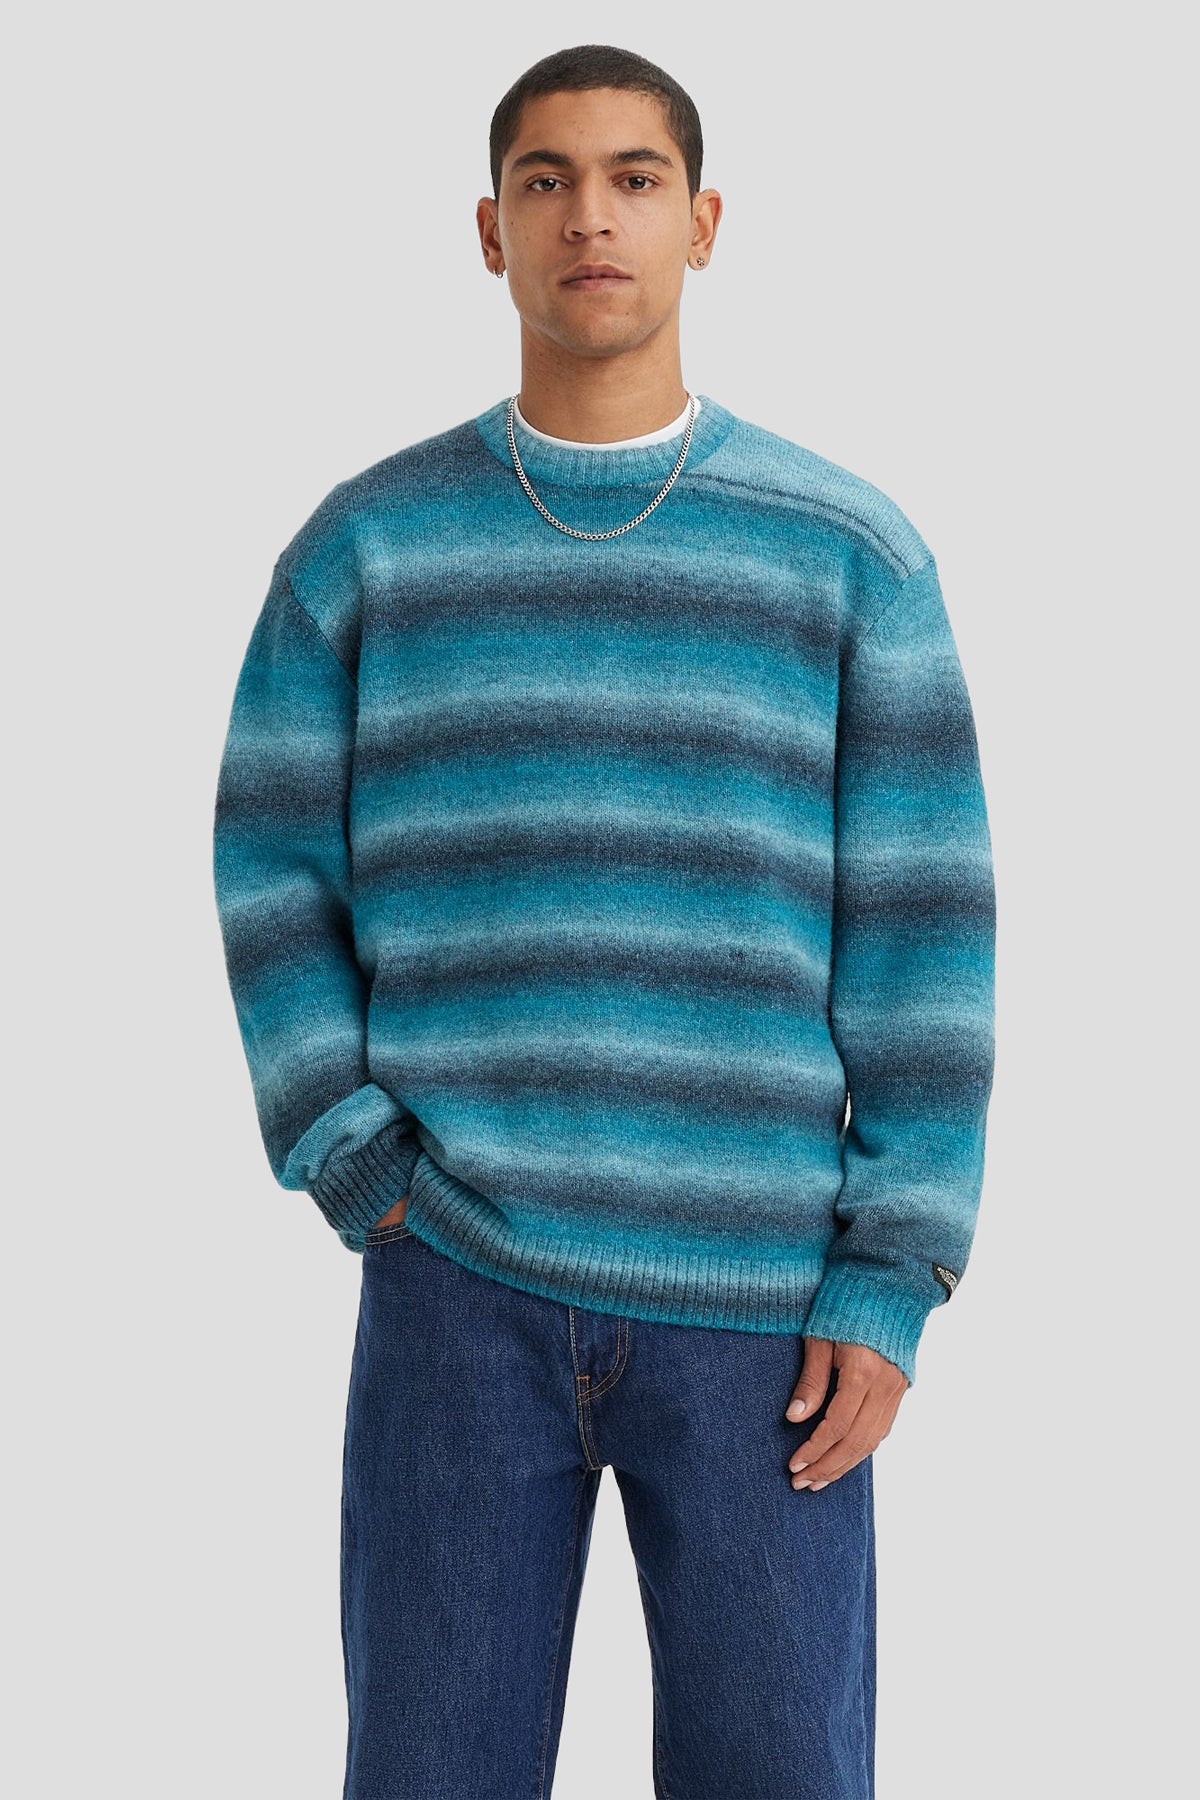 Space Dye Battery Sweater